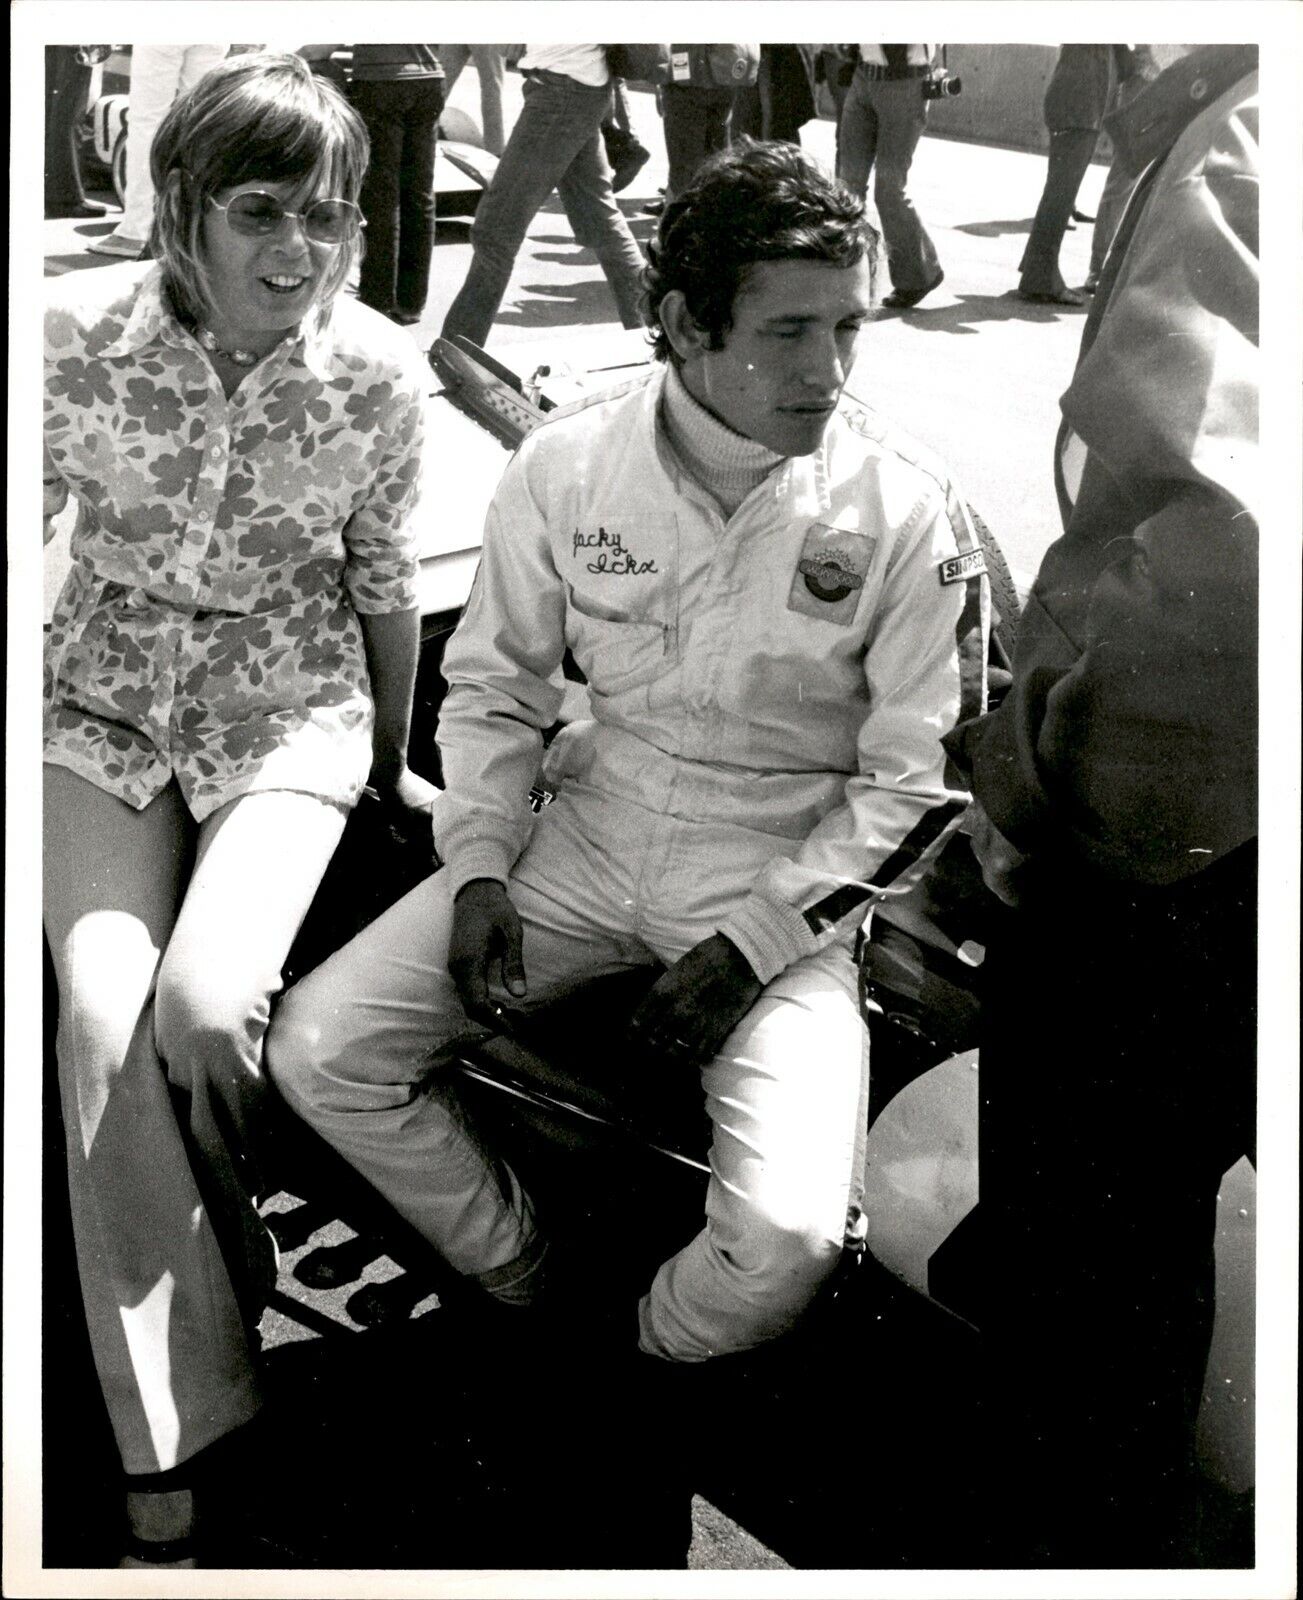 JT10 1969 Original Rick Strome Photo JACKY ICKX BELGIAN LE MANS RACE CAR DRIVER